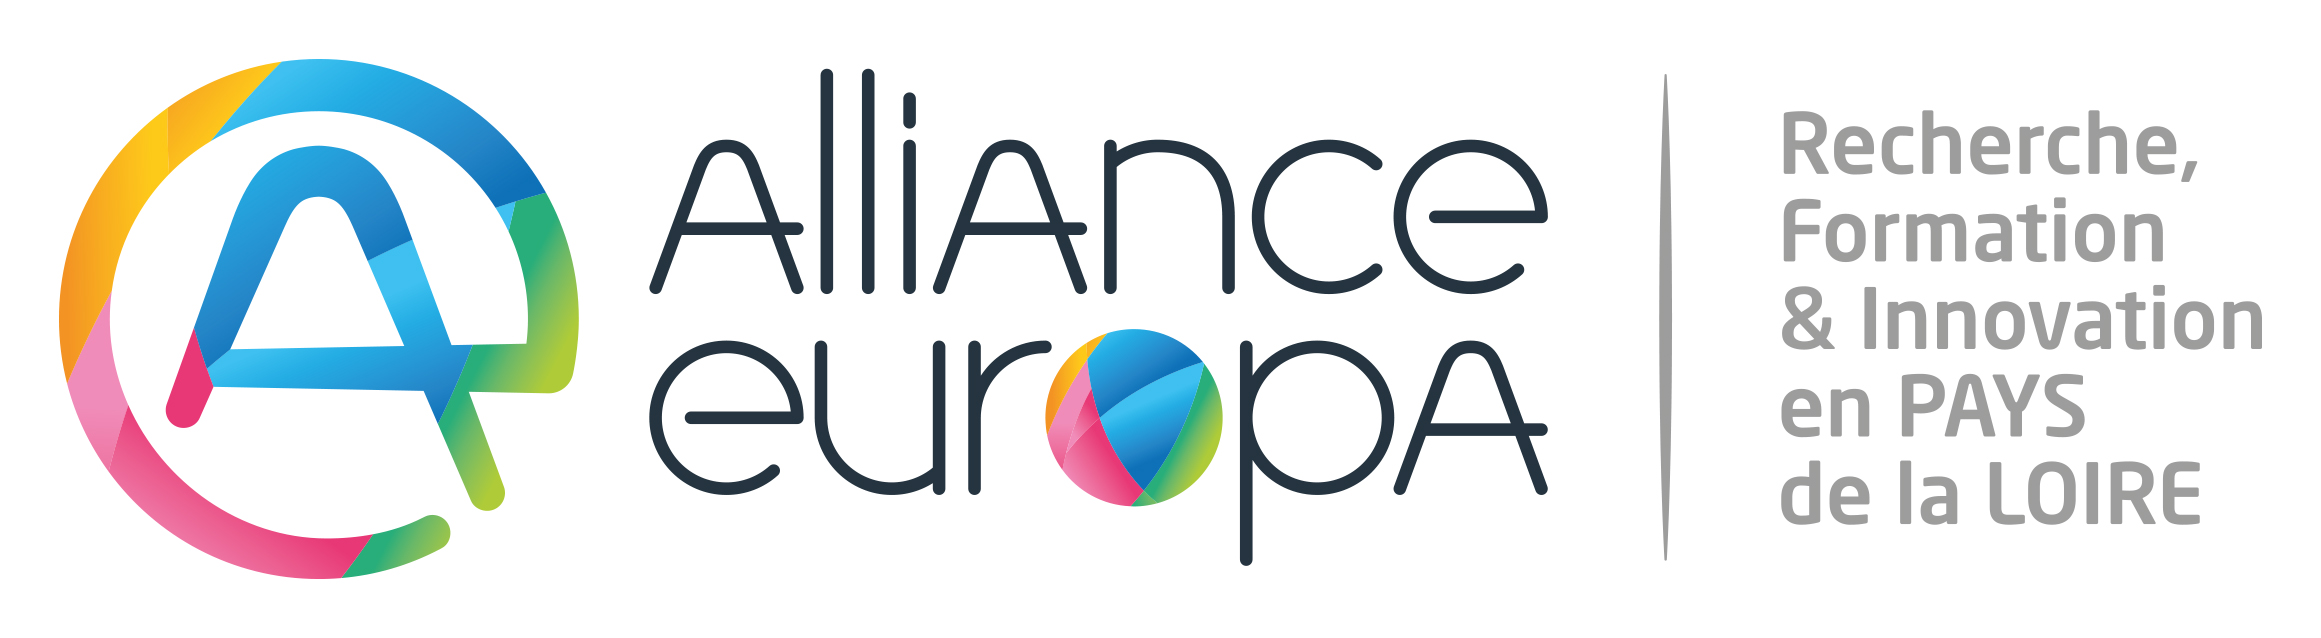 LogoAllianceEuropa_H.jpg